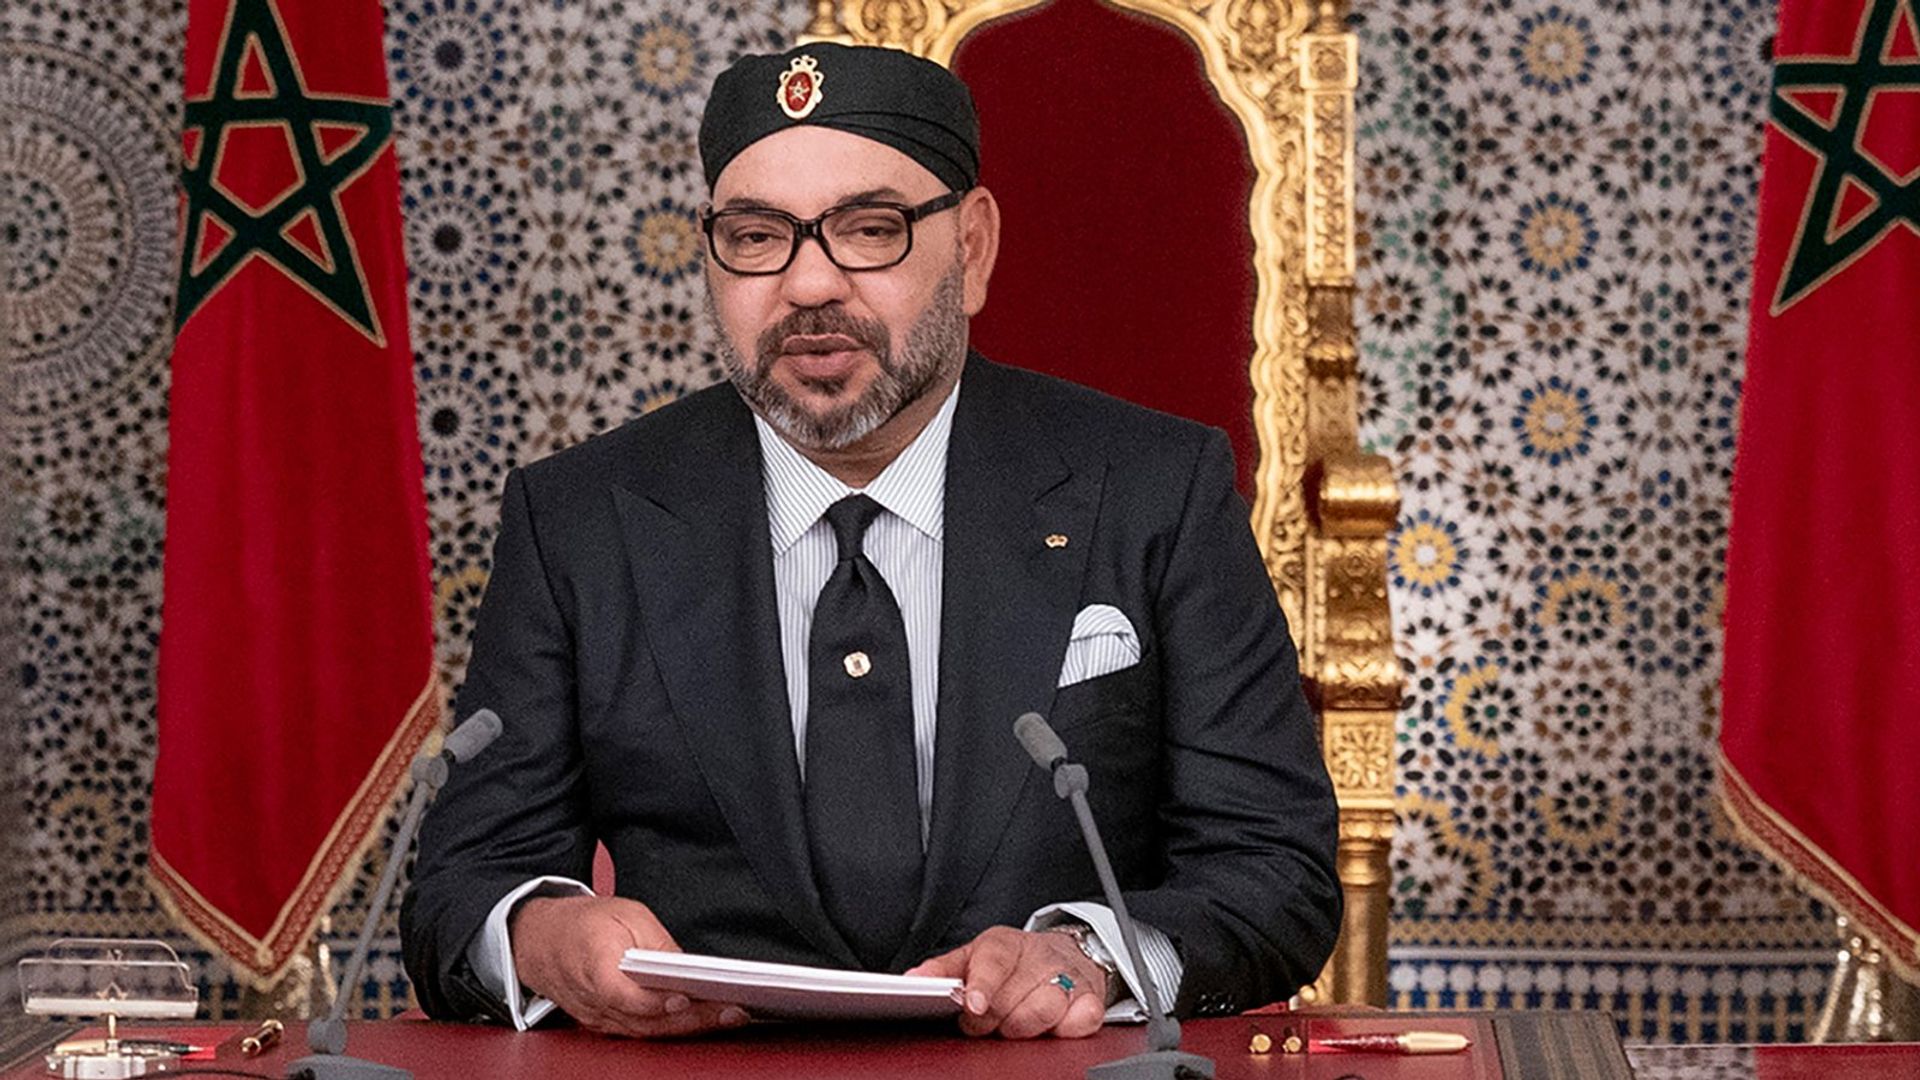 Koning_Mohammed_van_Marokko_houdt_toespraak.jpg